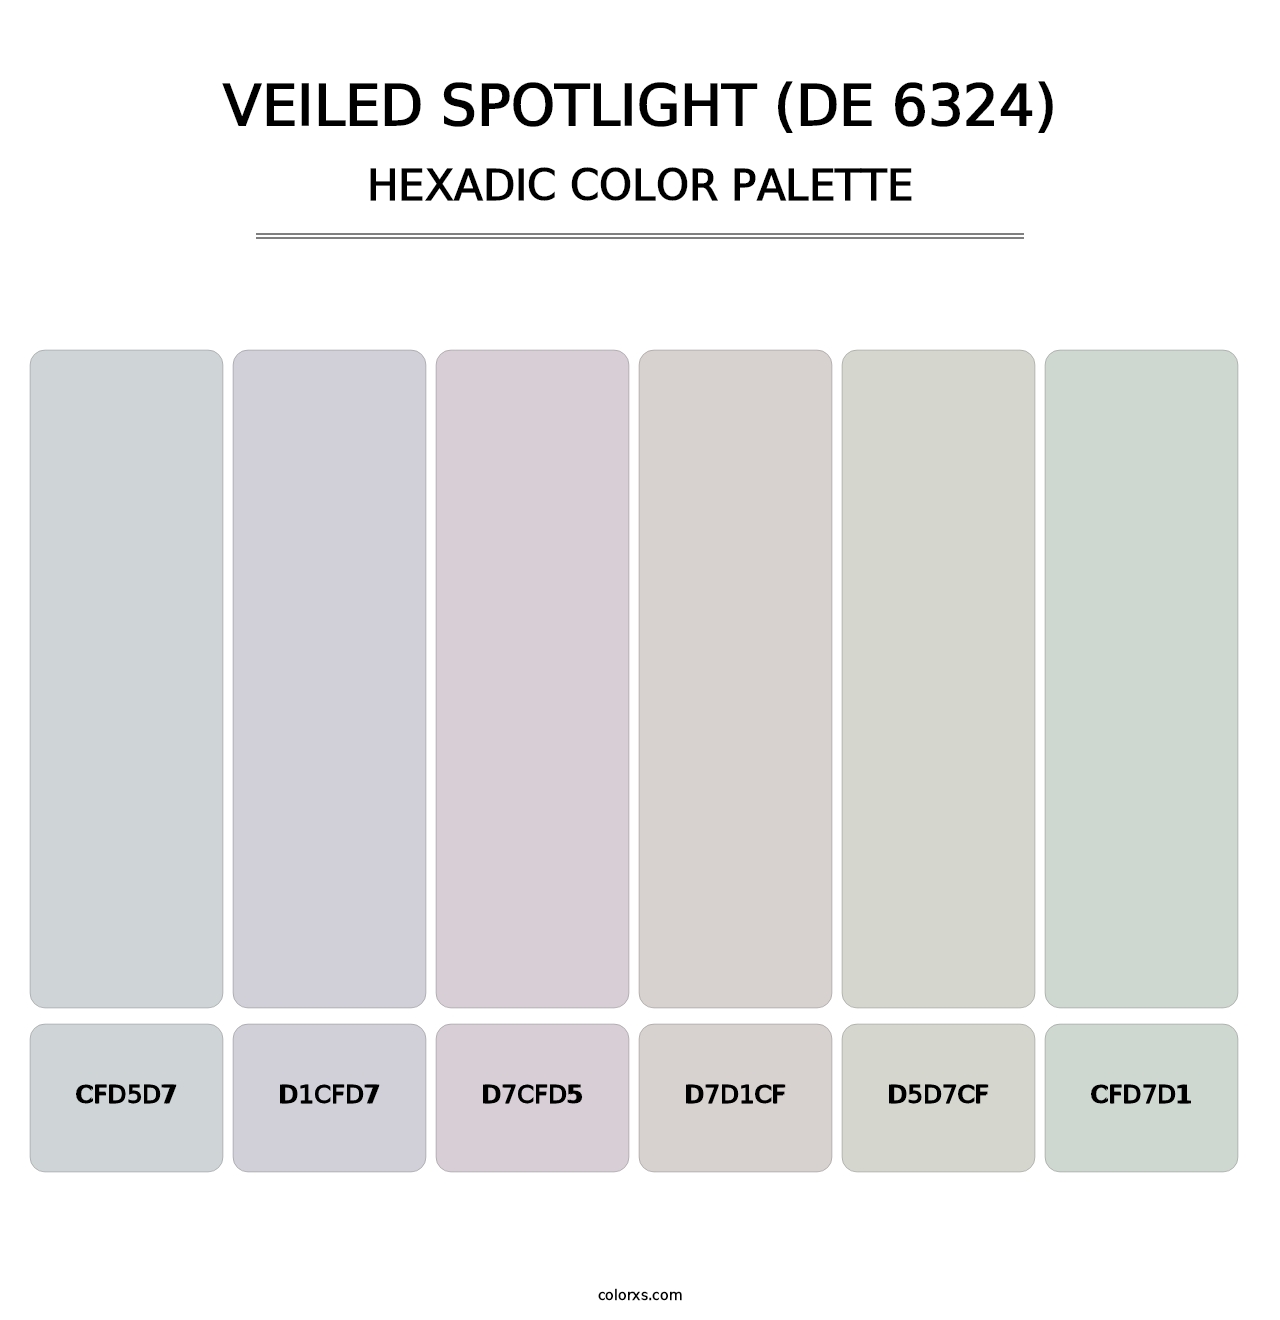 Veiled Spotlight (DE 6324) - Hexadic Color Palette